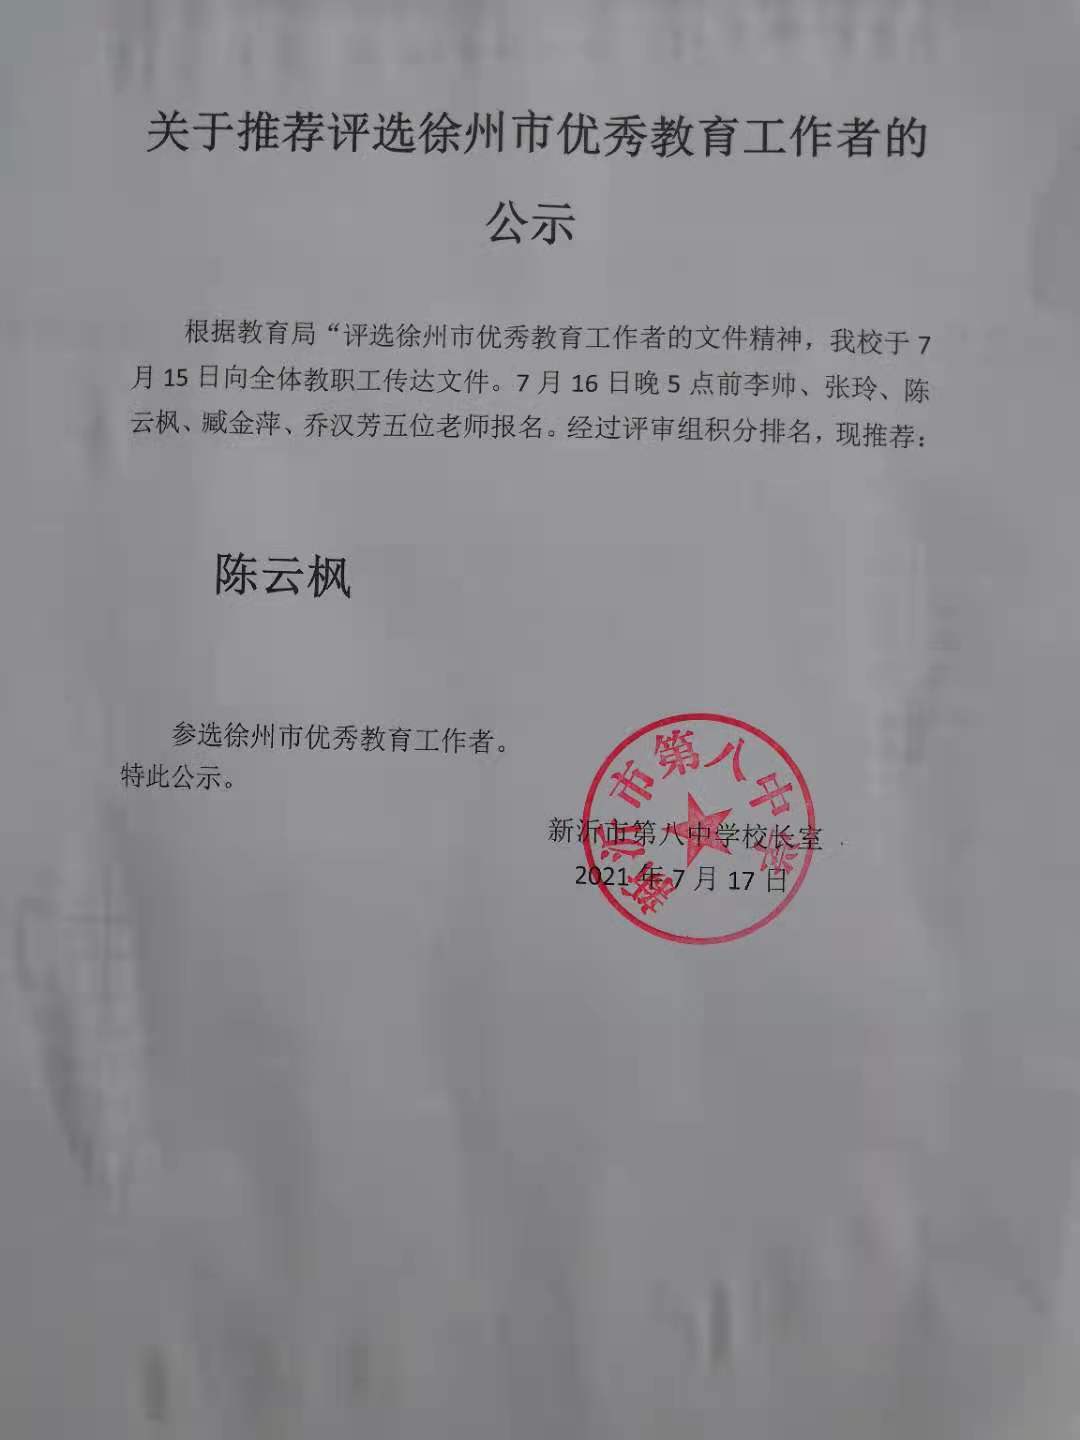 关于推荐评选徐州市优秀教育工作者的公示